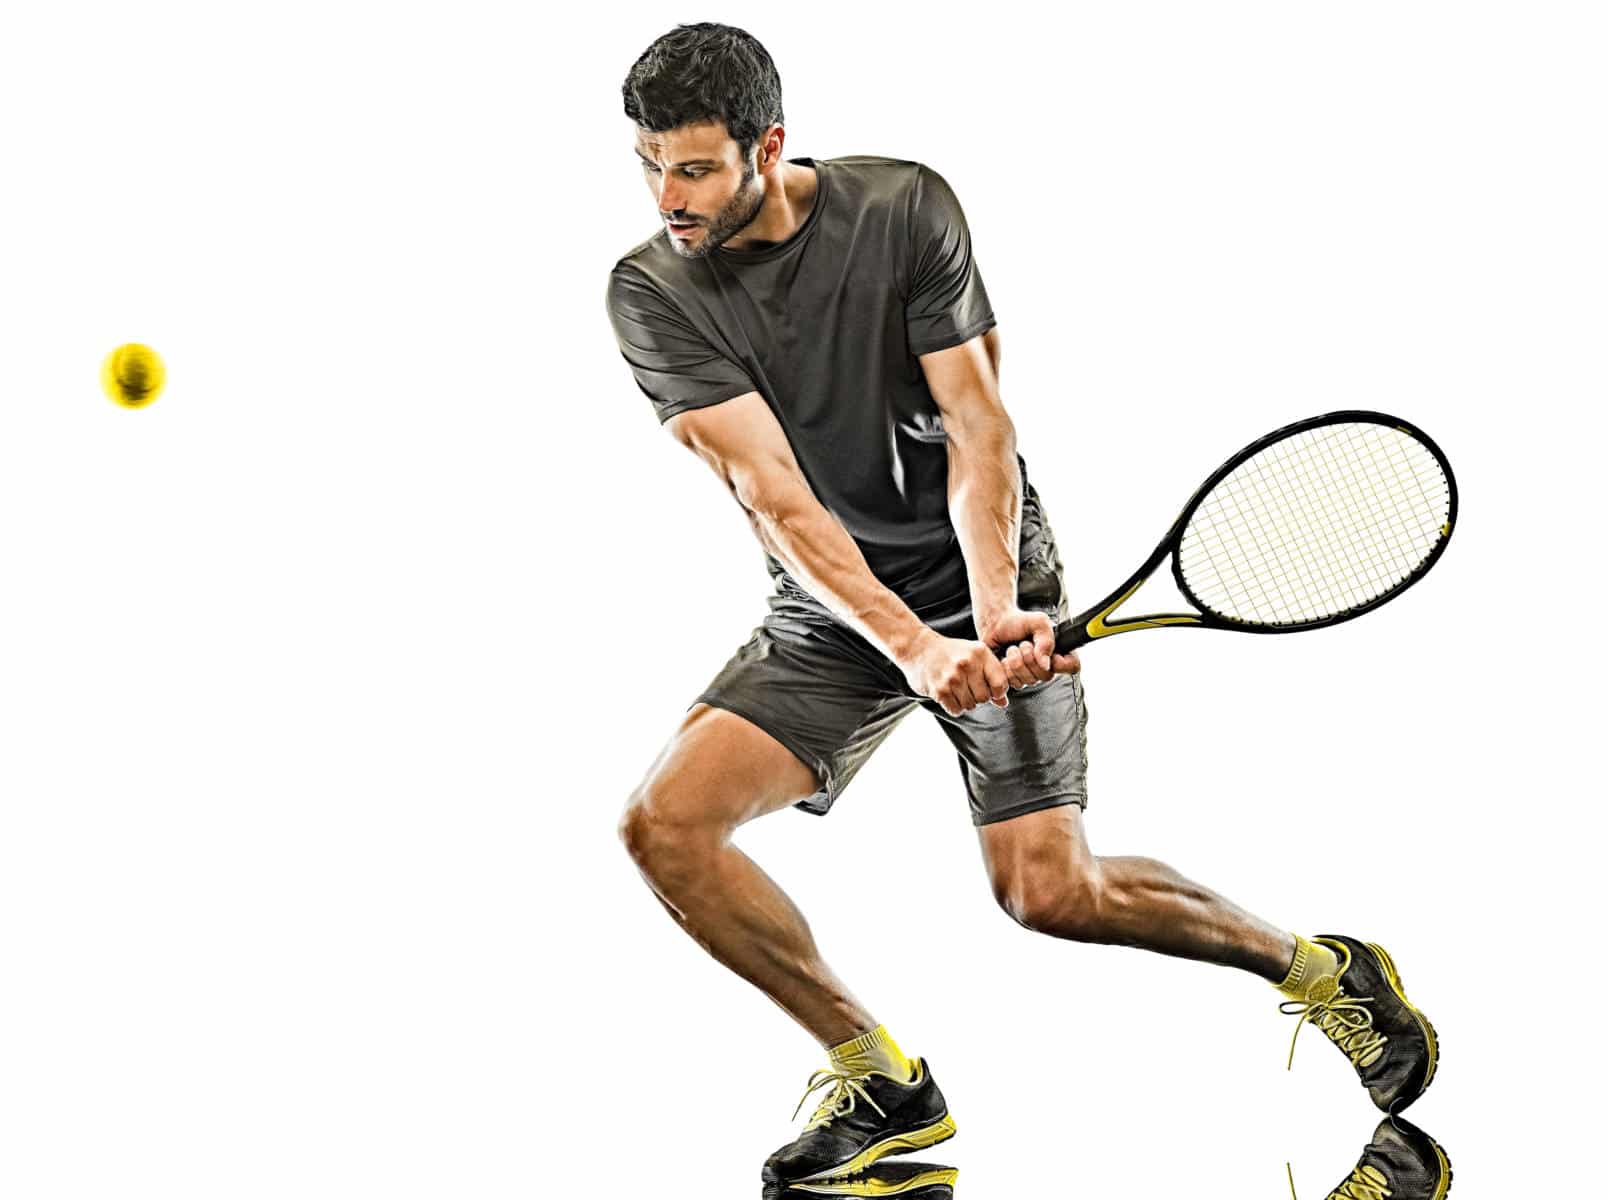 Mann spielt Tennis mit Belastung für Arme und Beine, Muskulatur, Sehnen, Bänder und Gelenke